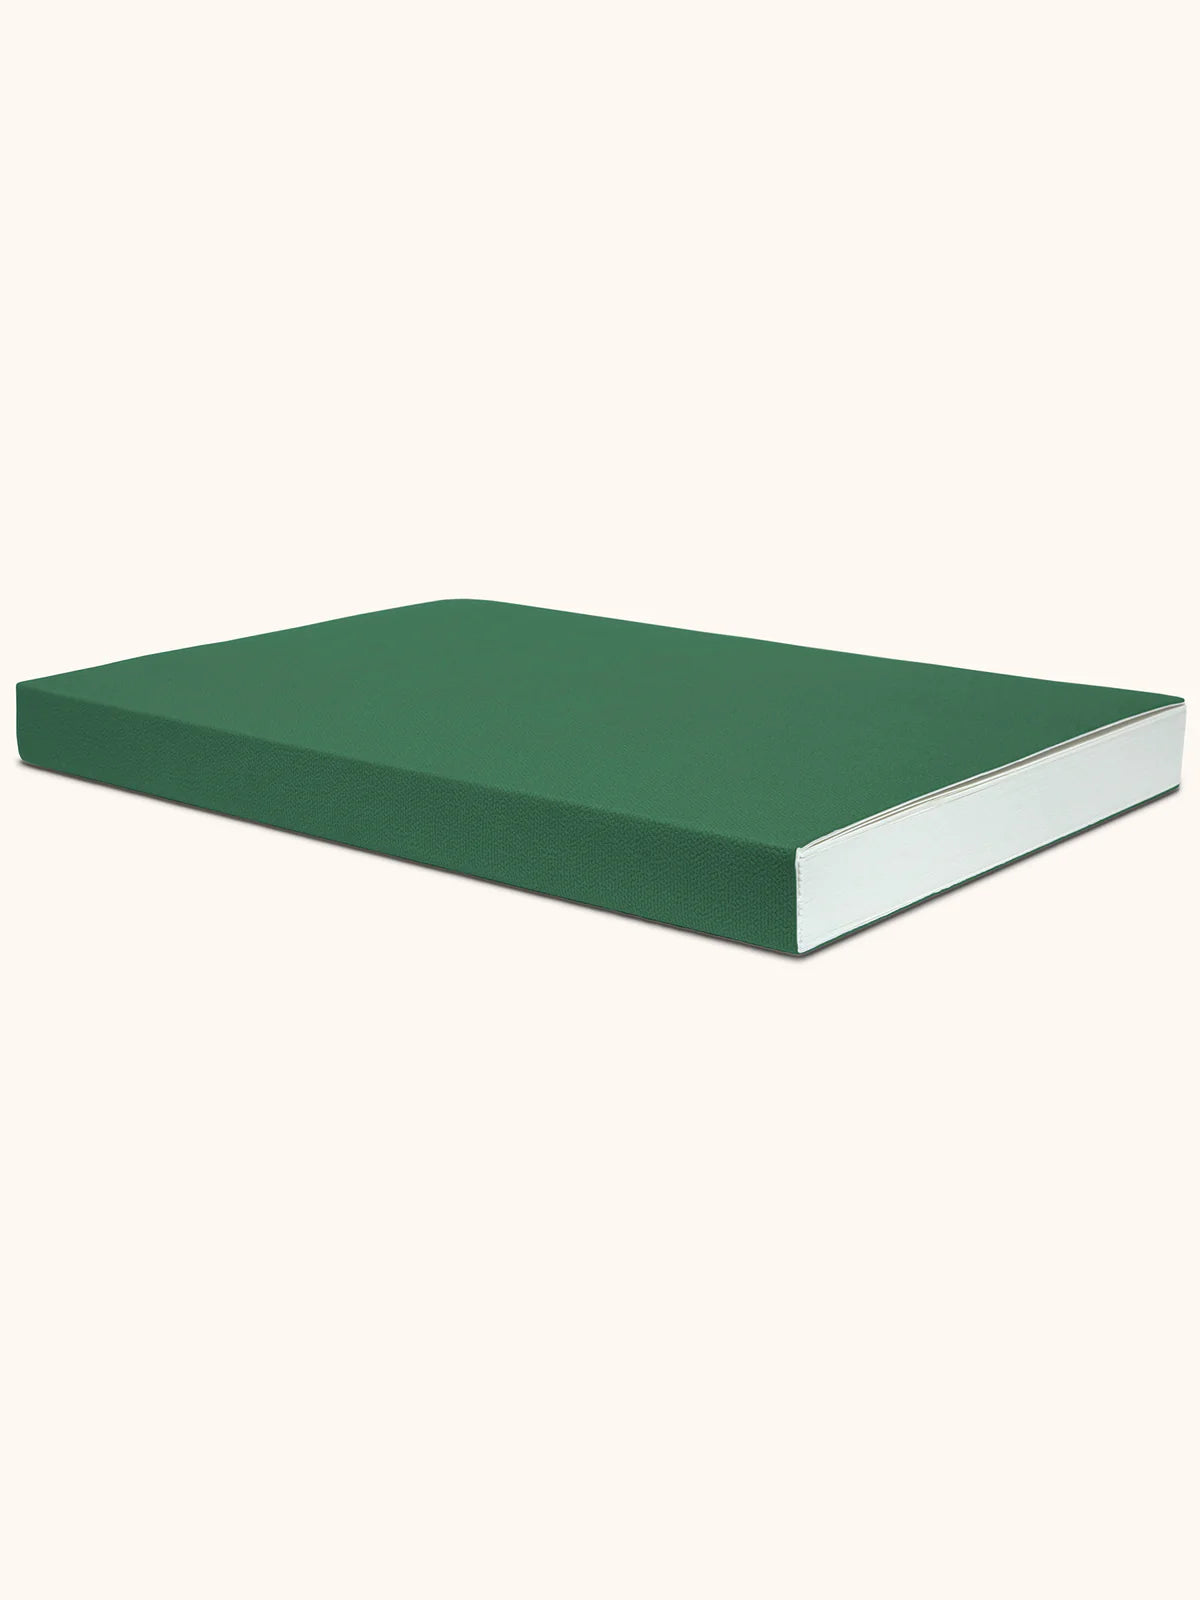 Riley Sketchbook - Forest Green